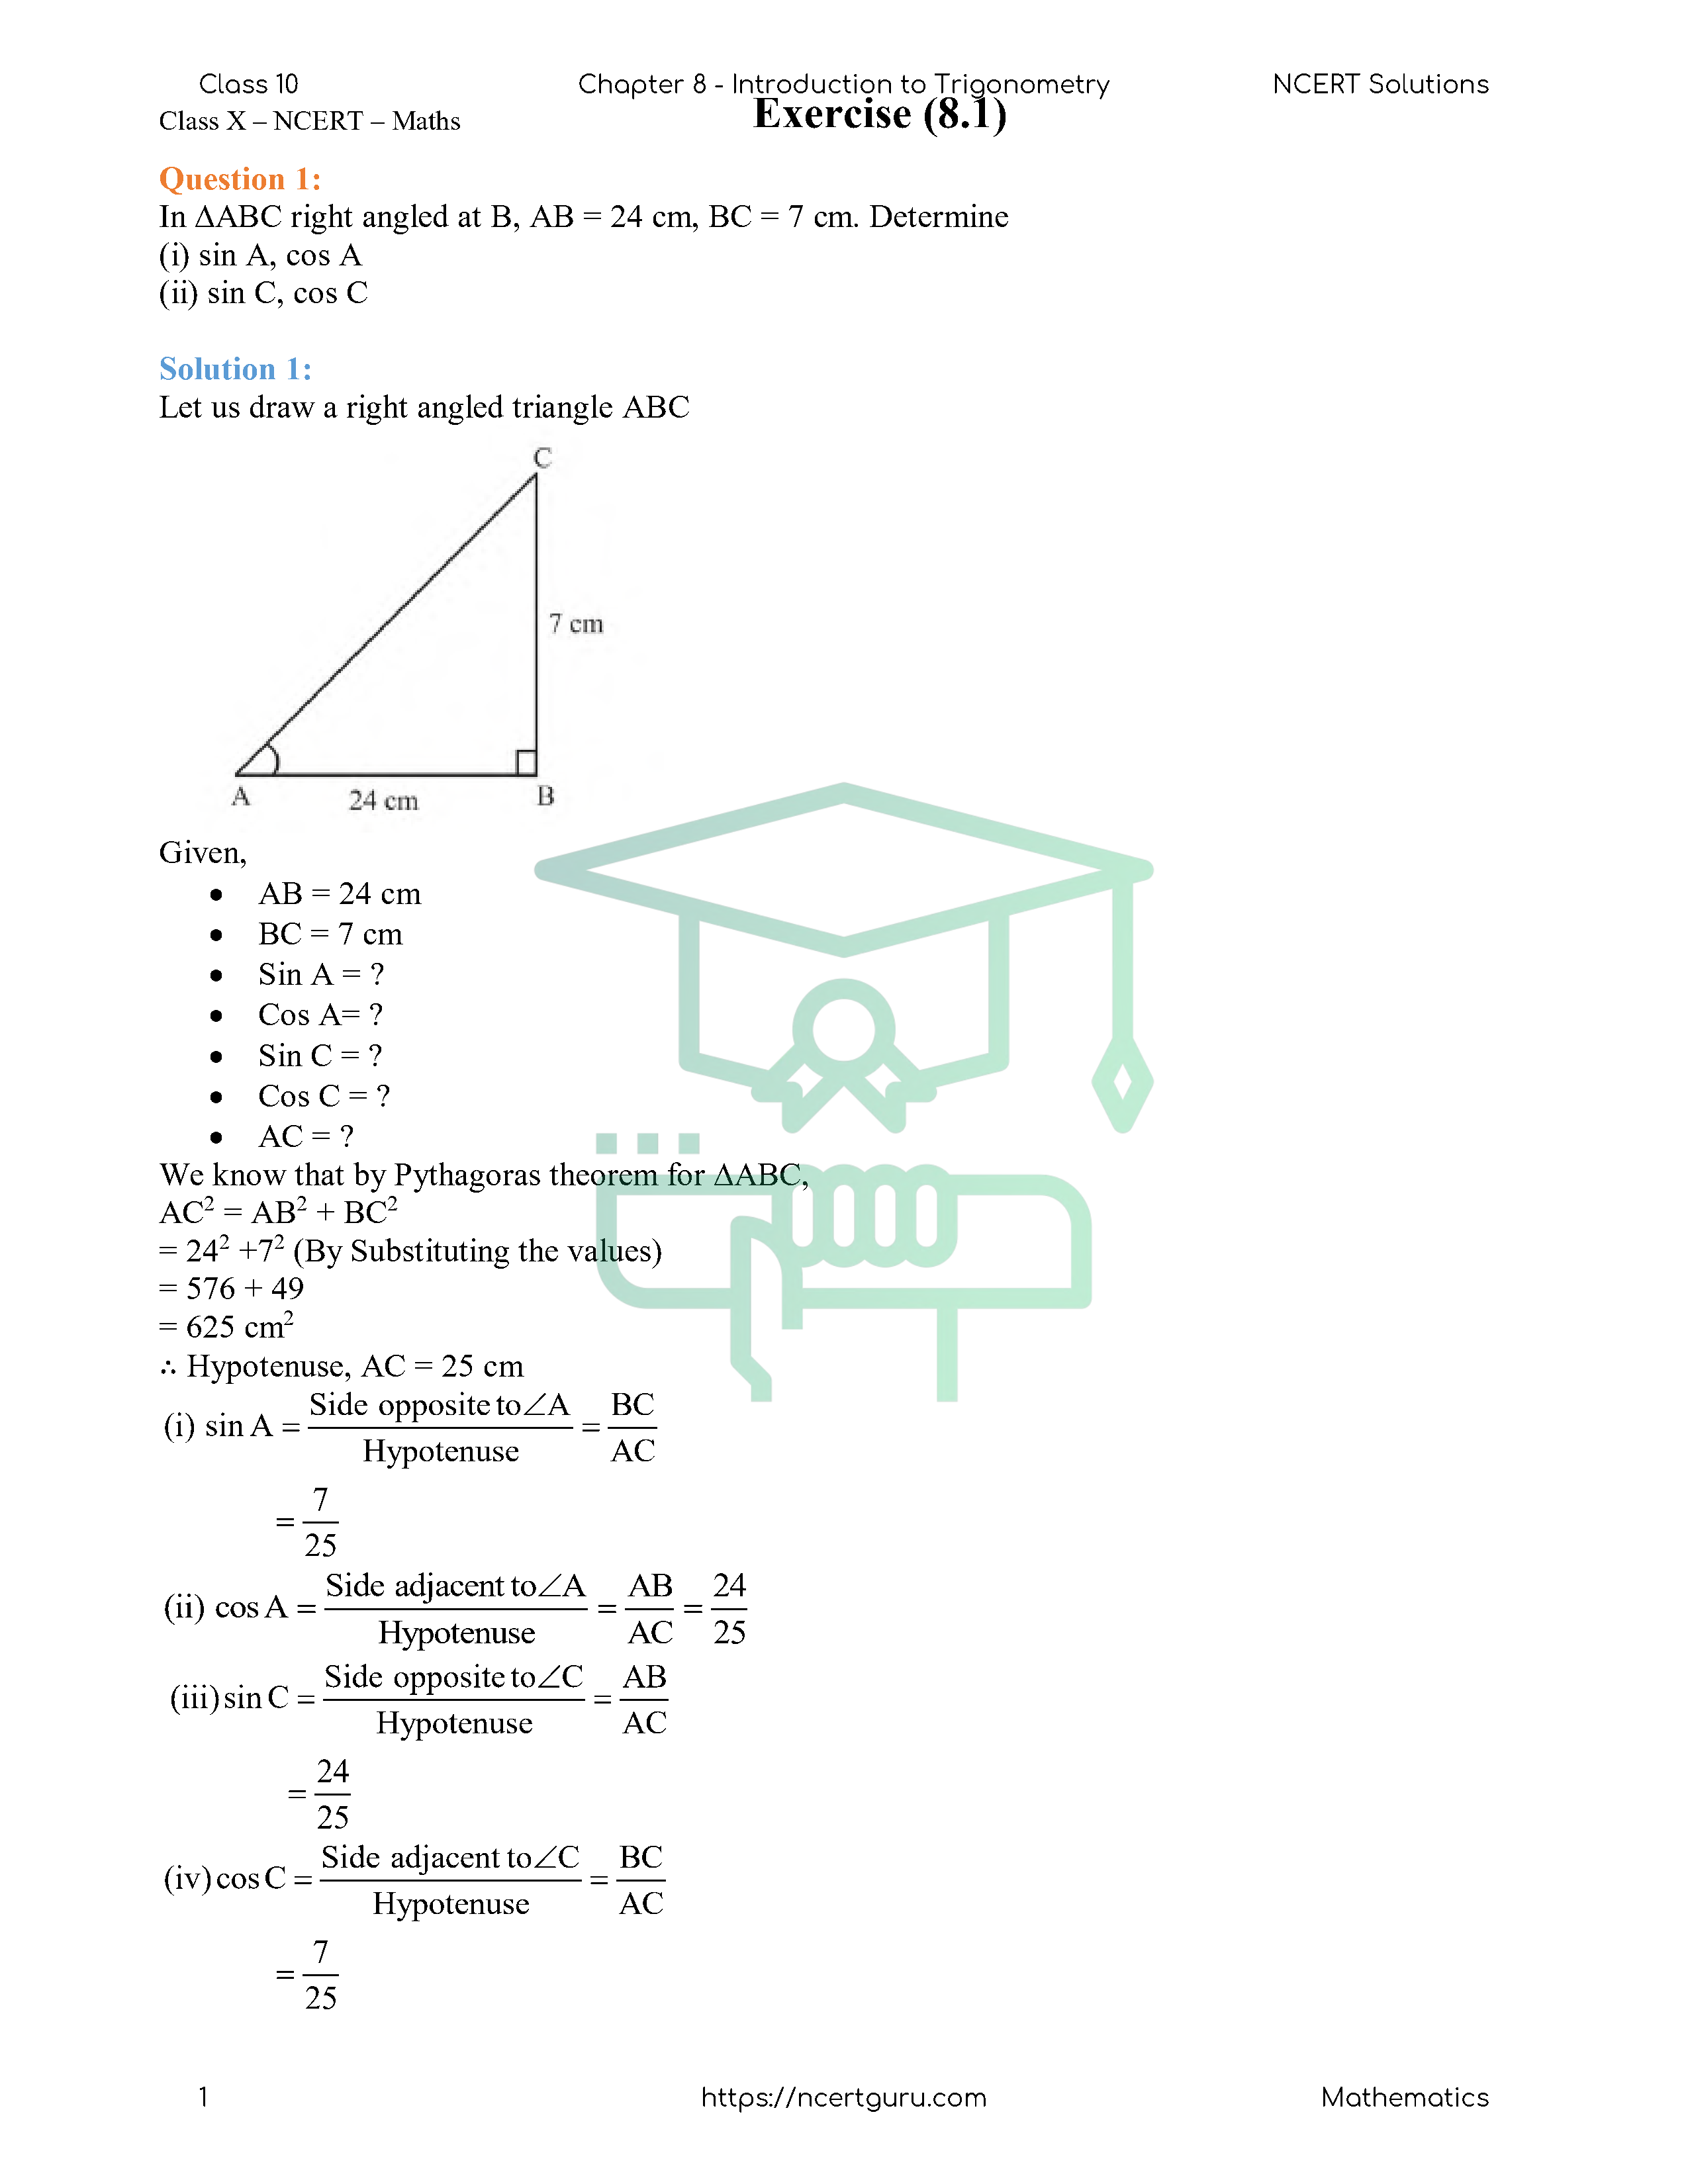 NCERT Solutions for Class 10 Maths Chapter 8